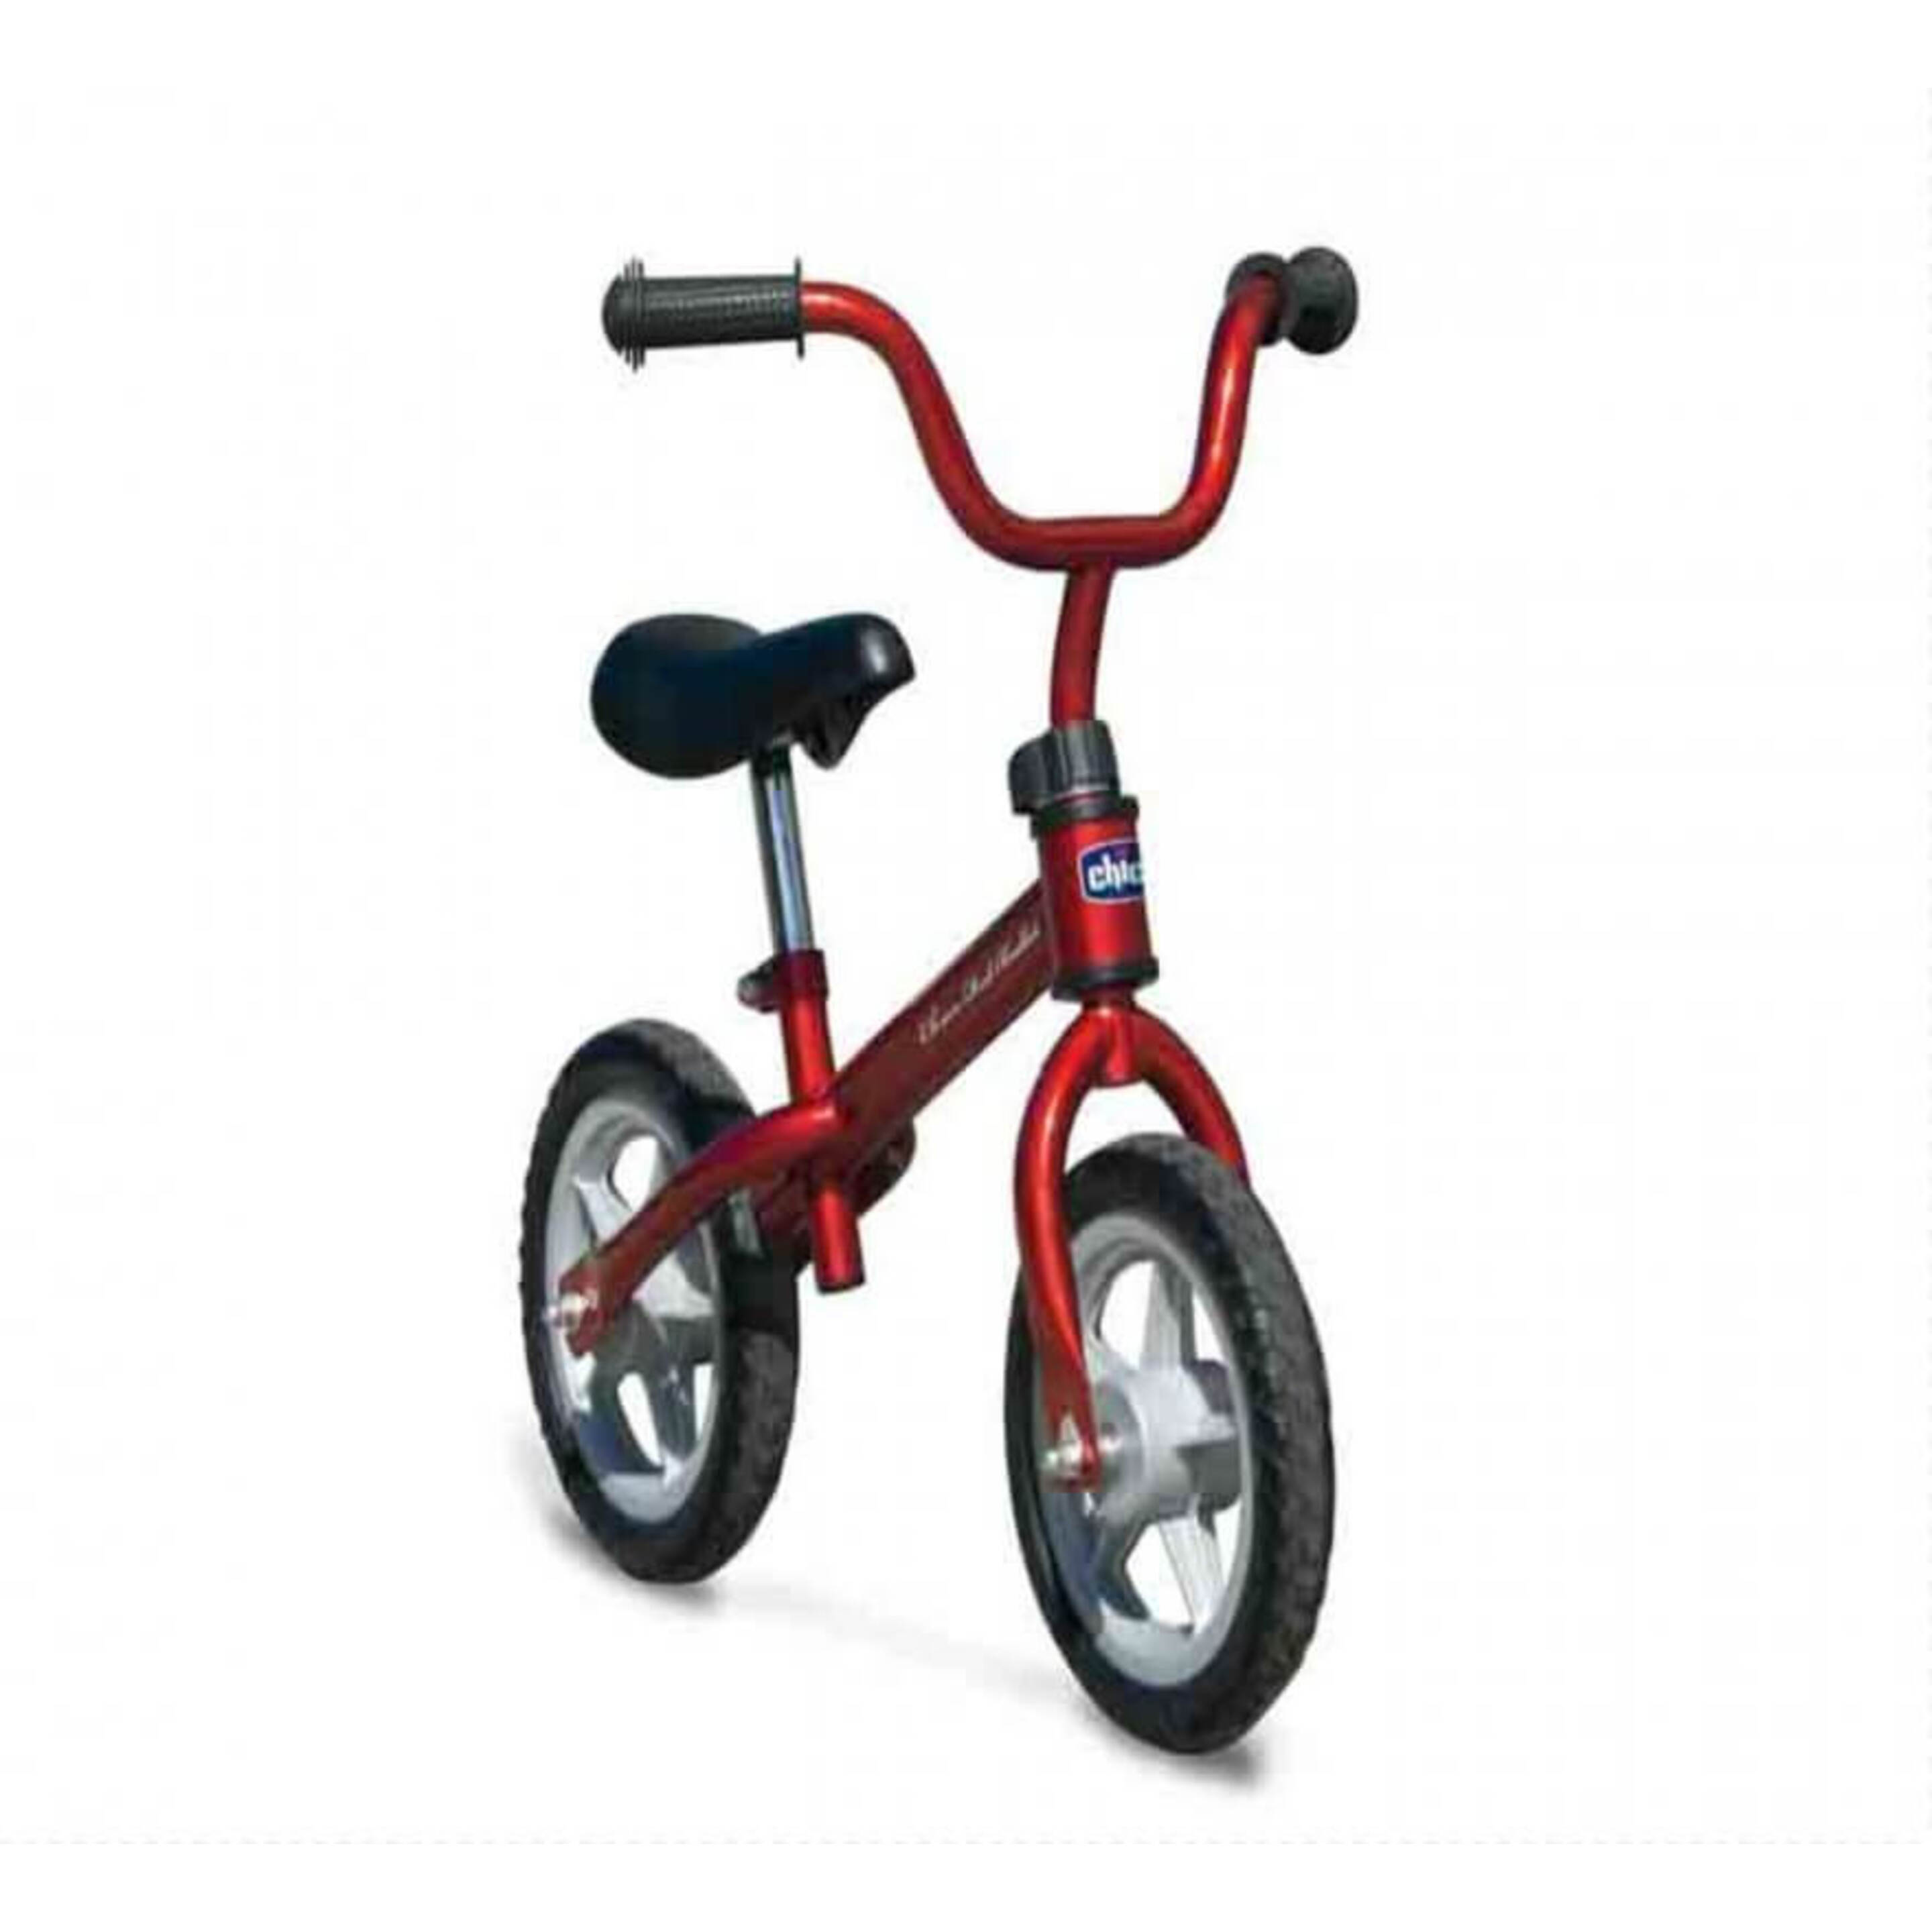 Bicicleta De Equilibrio Chicco Bullet - multicolor - 